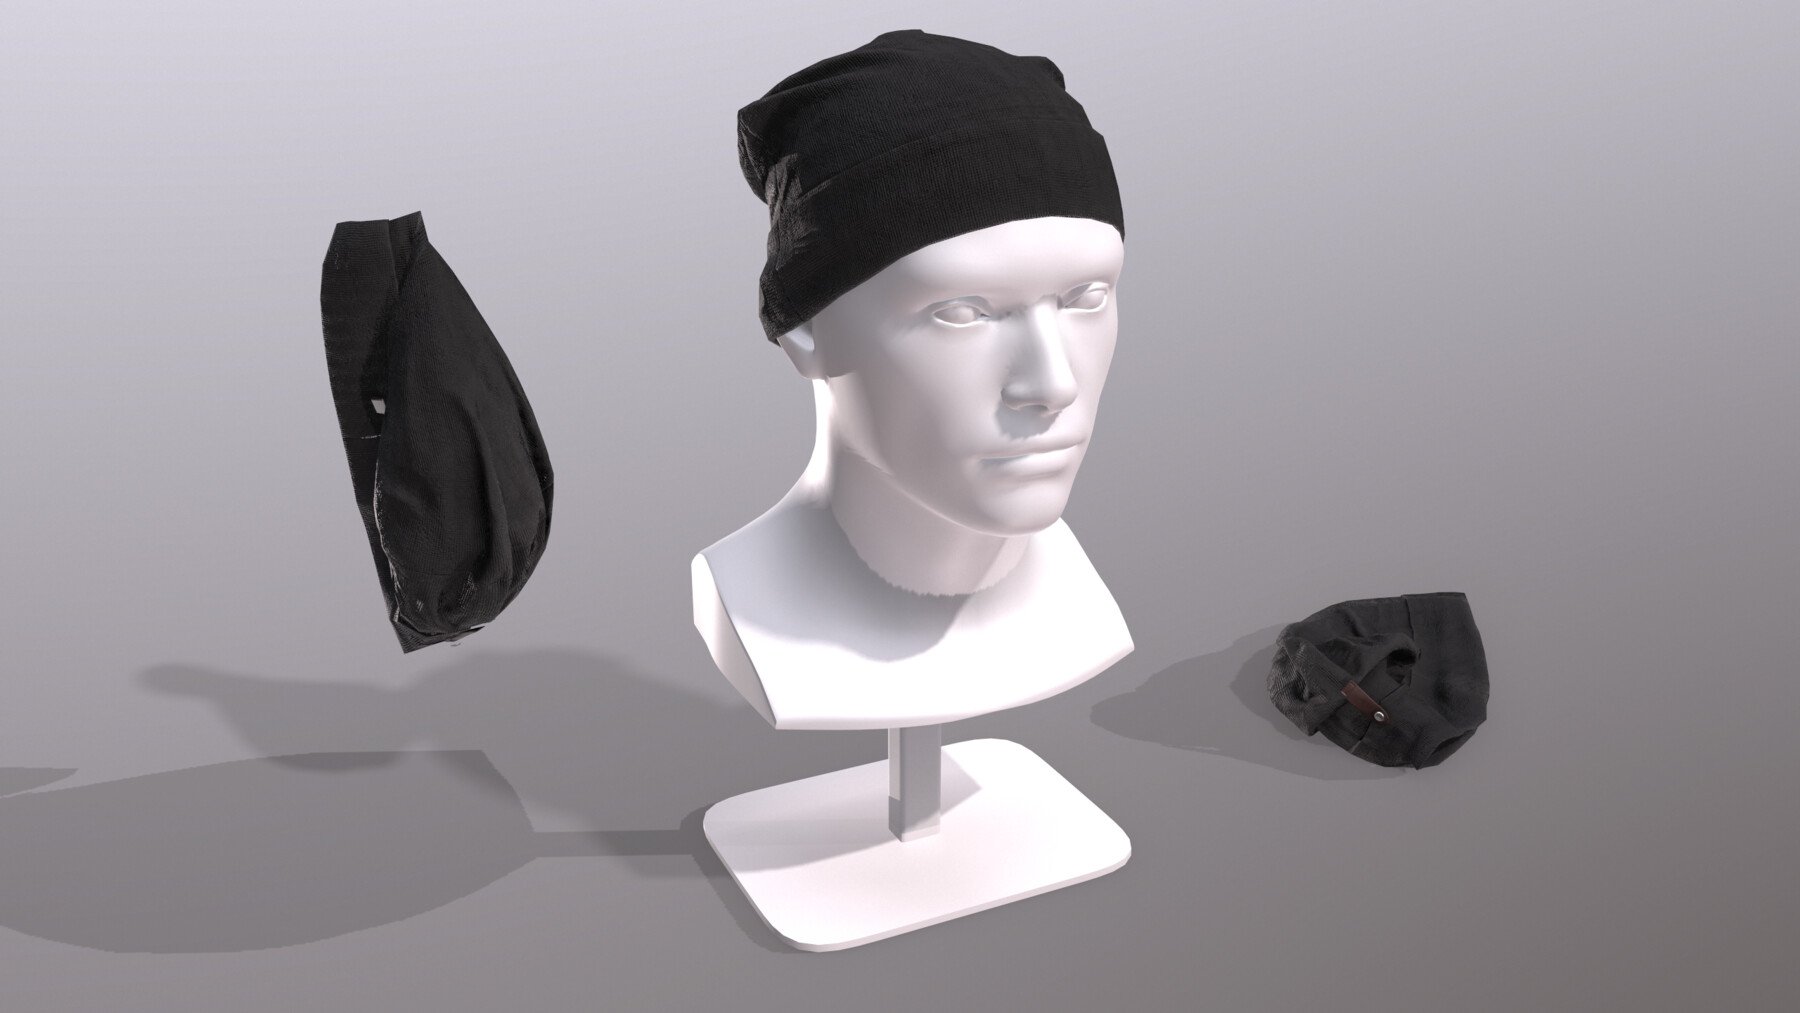 ArtStation - Marvelous Designer Beanie Hat